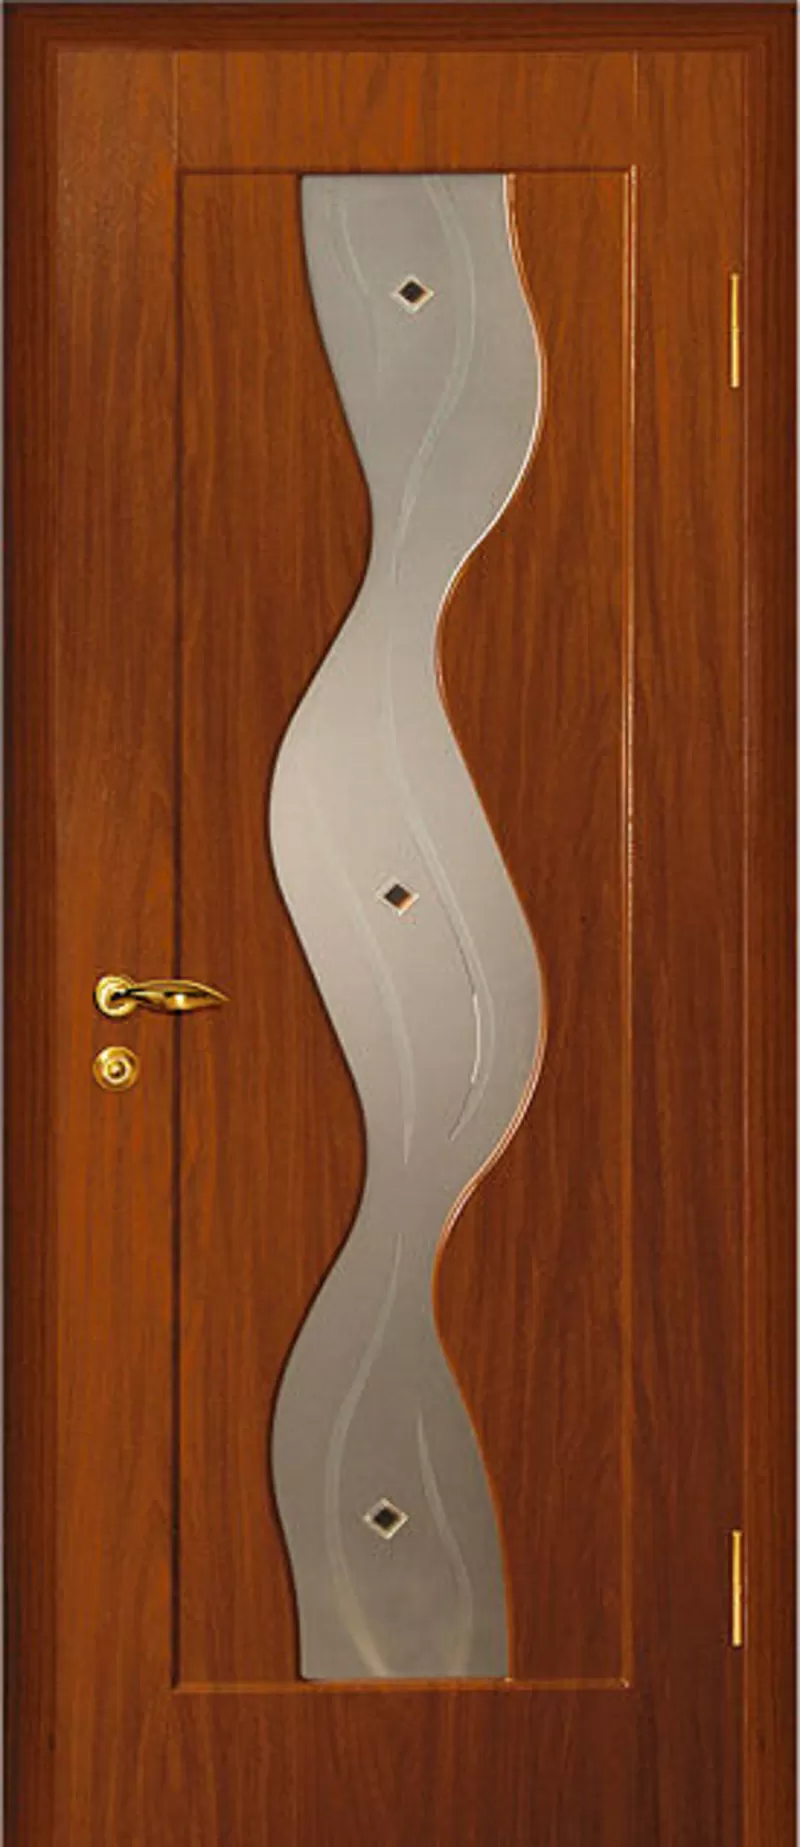 АКЦИЯ дверь МДФ с покрытием плёнки ПВХ от 1100 т.р. в РАССРОЧКУ 0% на 3 месяца в бел. руб 5